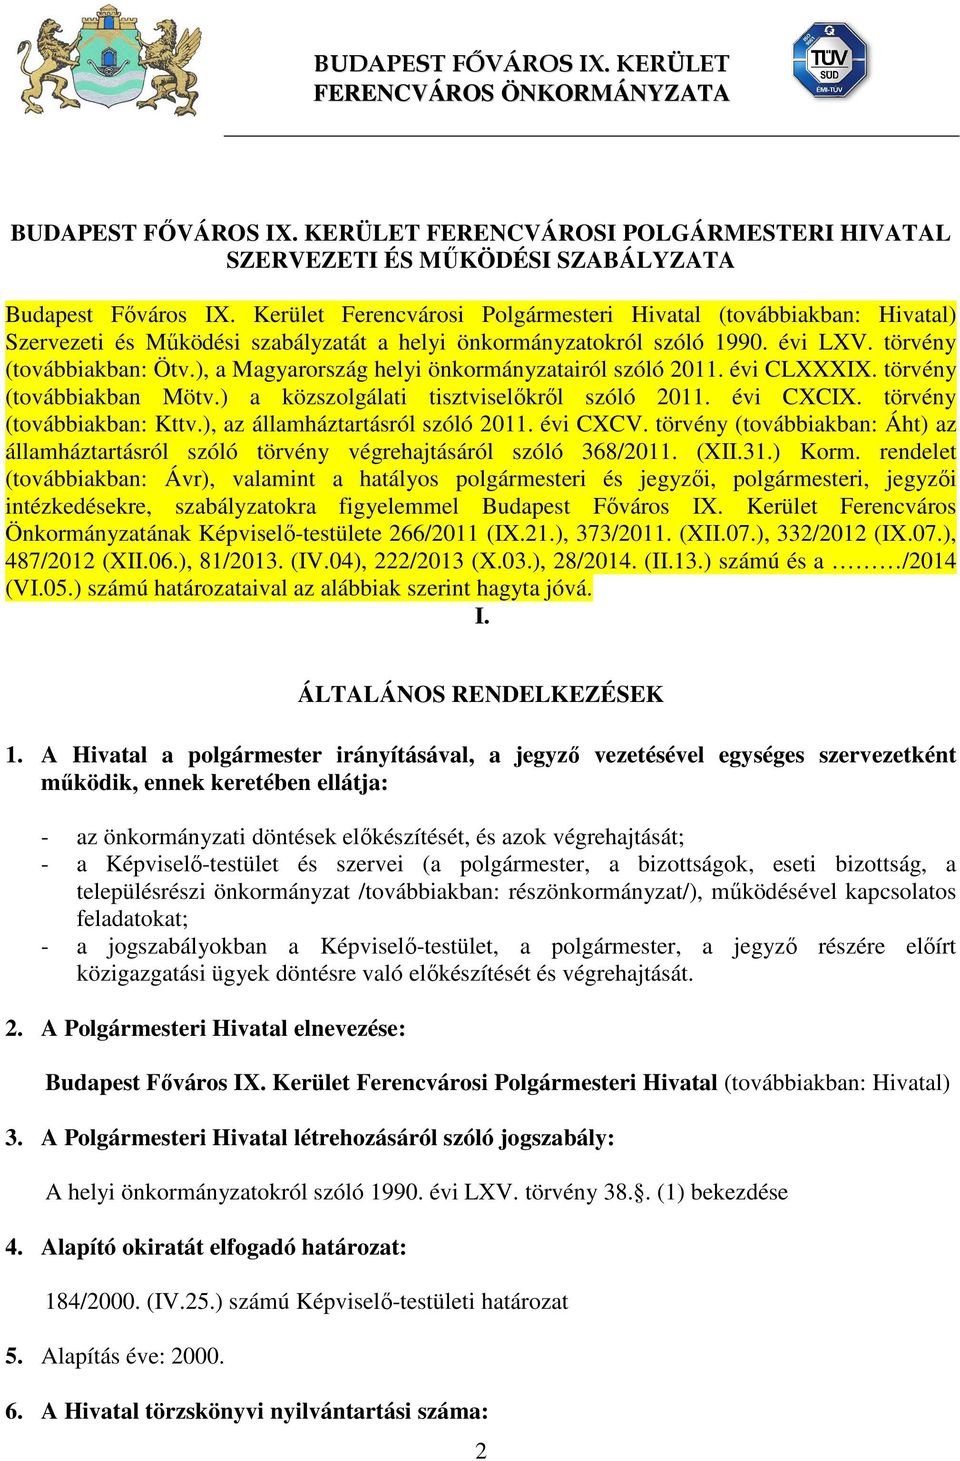 ), a Magyarország helyi önkormányzatairól szóló 2011. évi CLXXXIX. törvény (továbbiakban Mötv.) a közszolgálati tisztviselőkről szóló 2011. évi CXCIX. törvény (továbbiakban: Kttv.